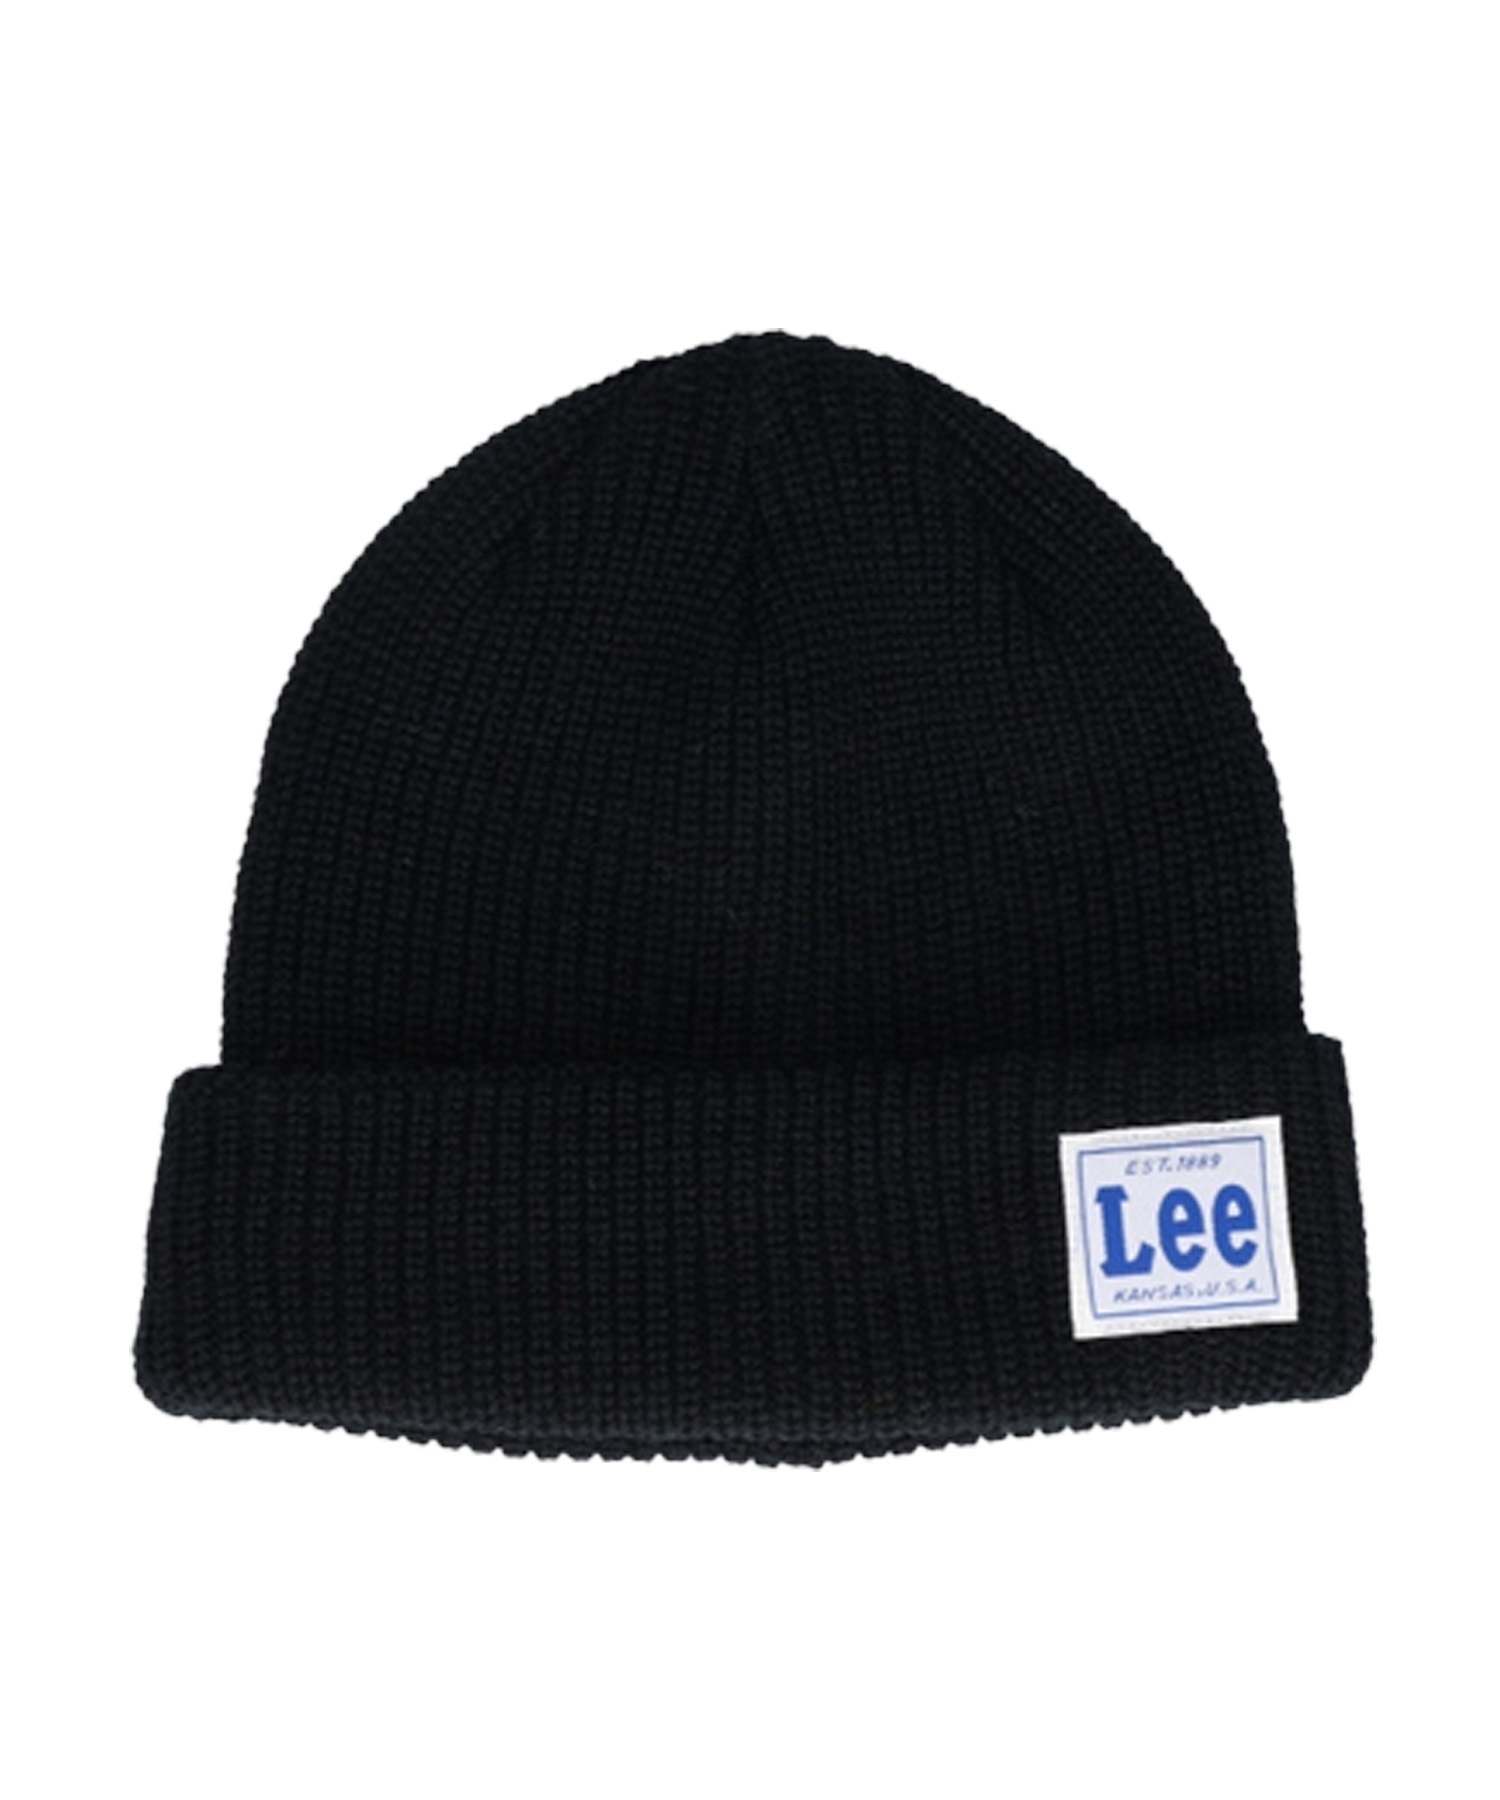 LEE/リー ニットキャップ ビーニー 帽子 100176316(71NV-FREE)